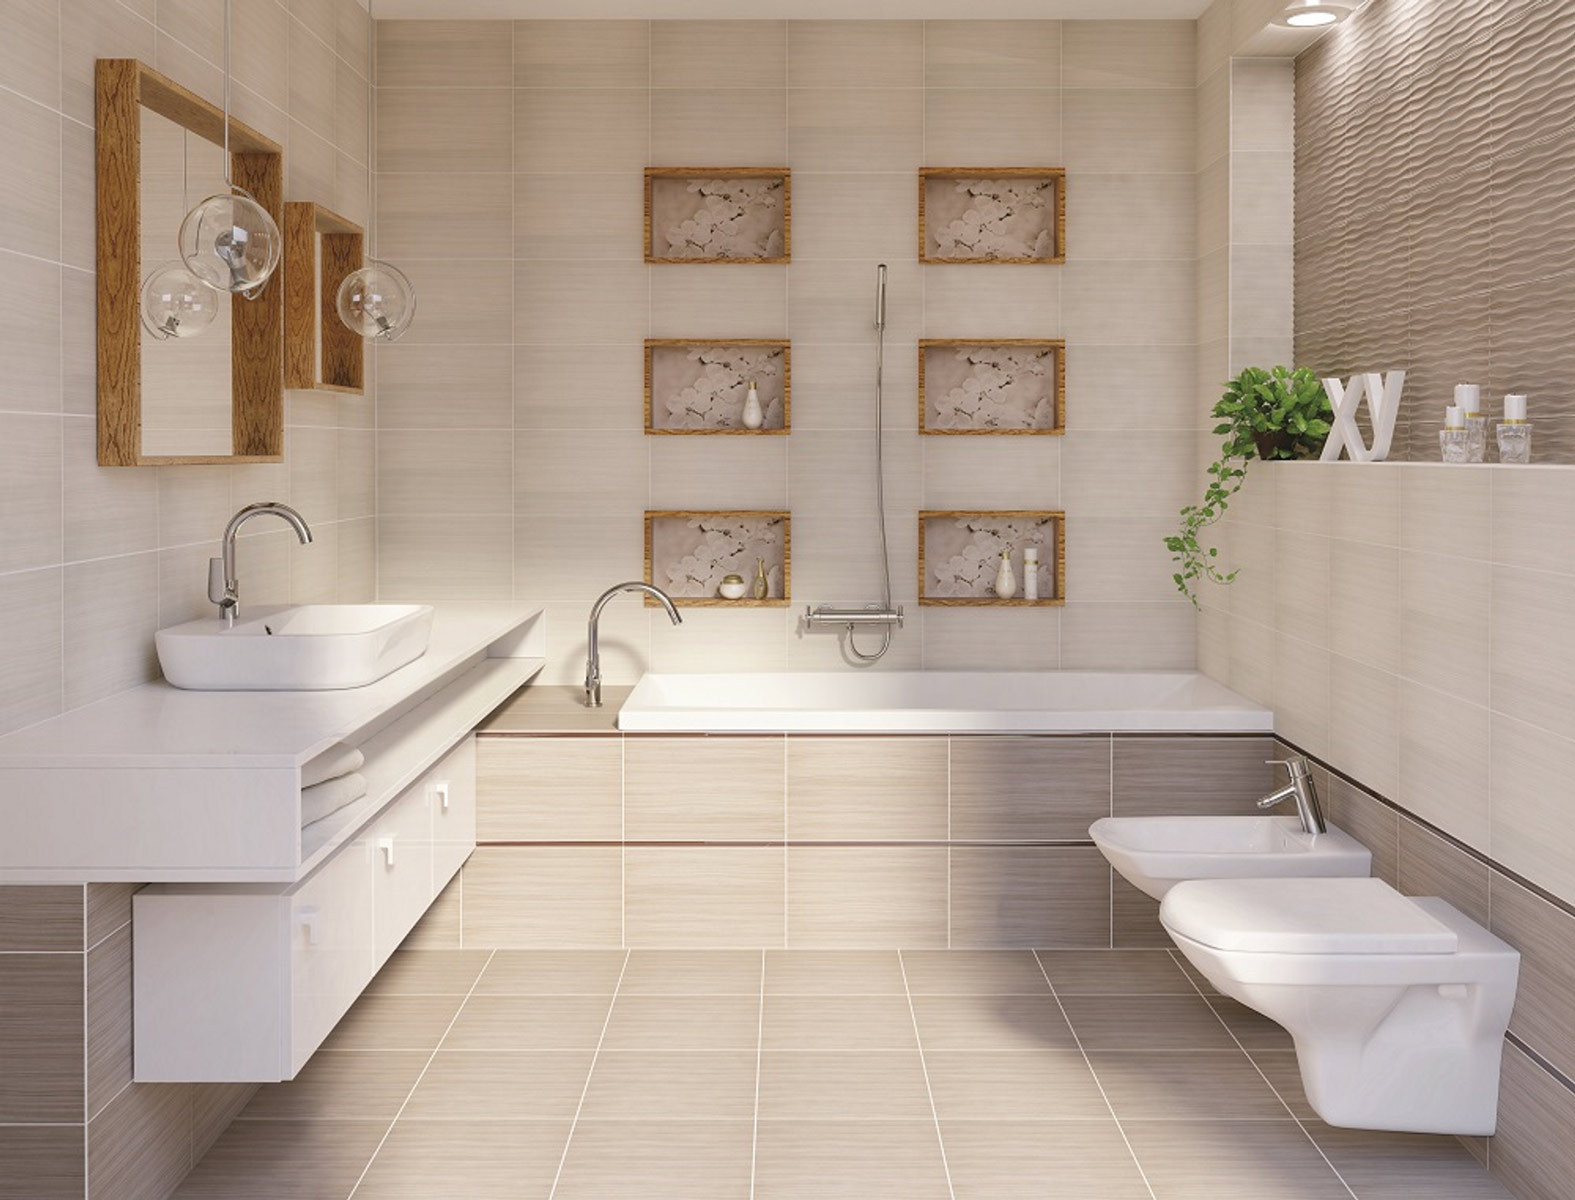 Леруа мерлен дизайн проект ванной комнаты раскладка плитки онлайн